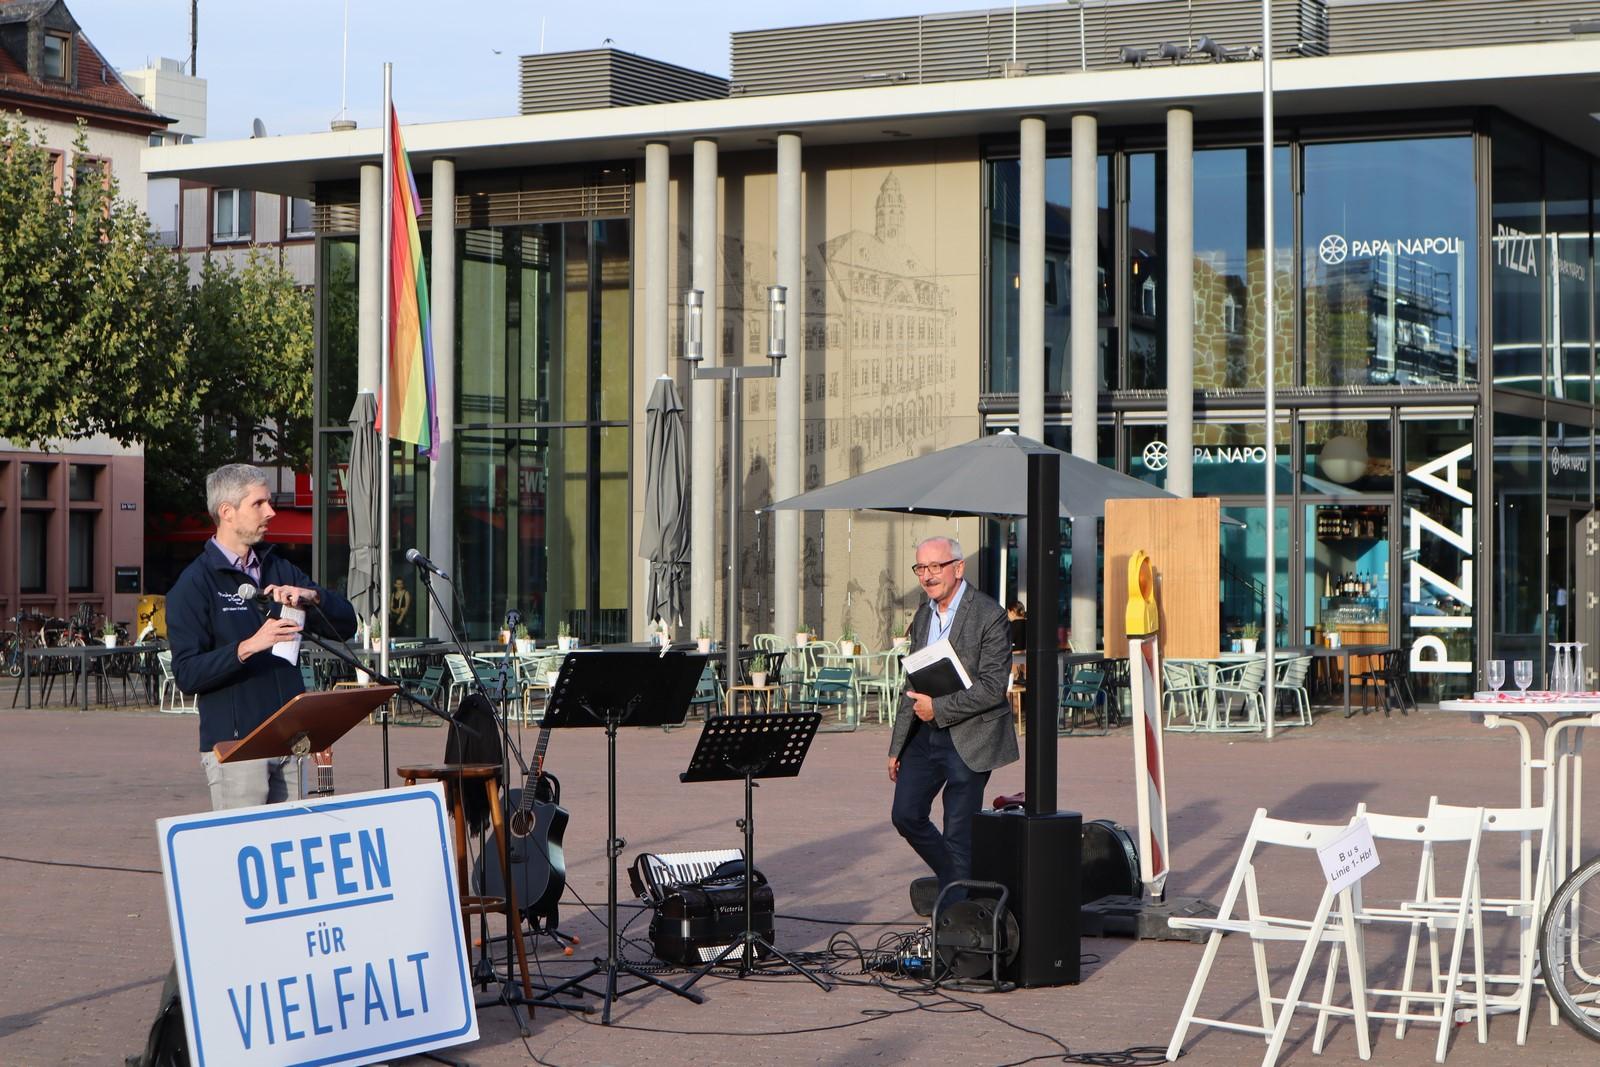 Zu sehen ist Pfarrer Rühl am rechten Ende des Bildes vor der Musikanlage. Daniel nimmt sich das Mikrofon für die Eröffnungsworte. Unten steht auf einem Schild groß "Offen für Vielfalt".